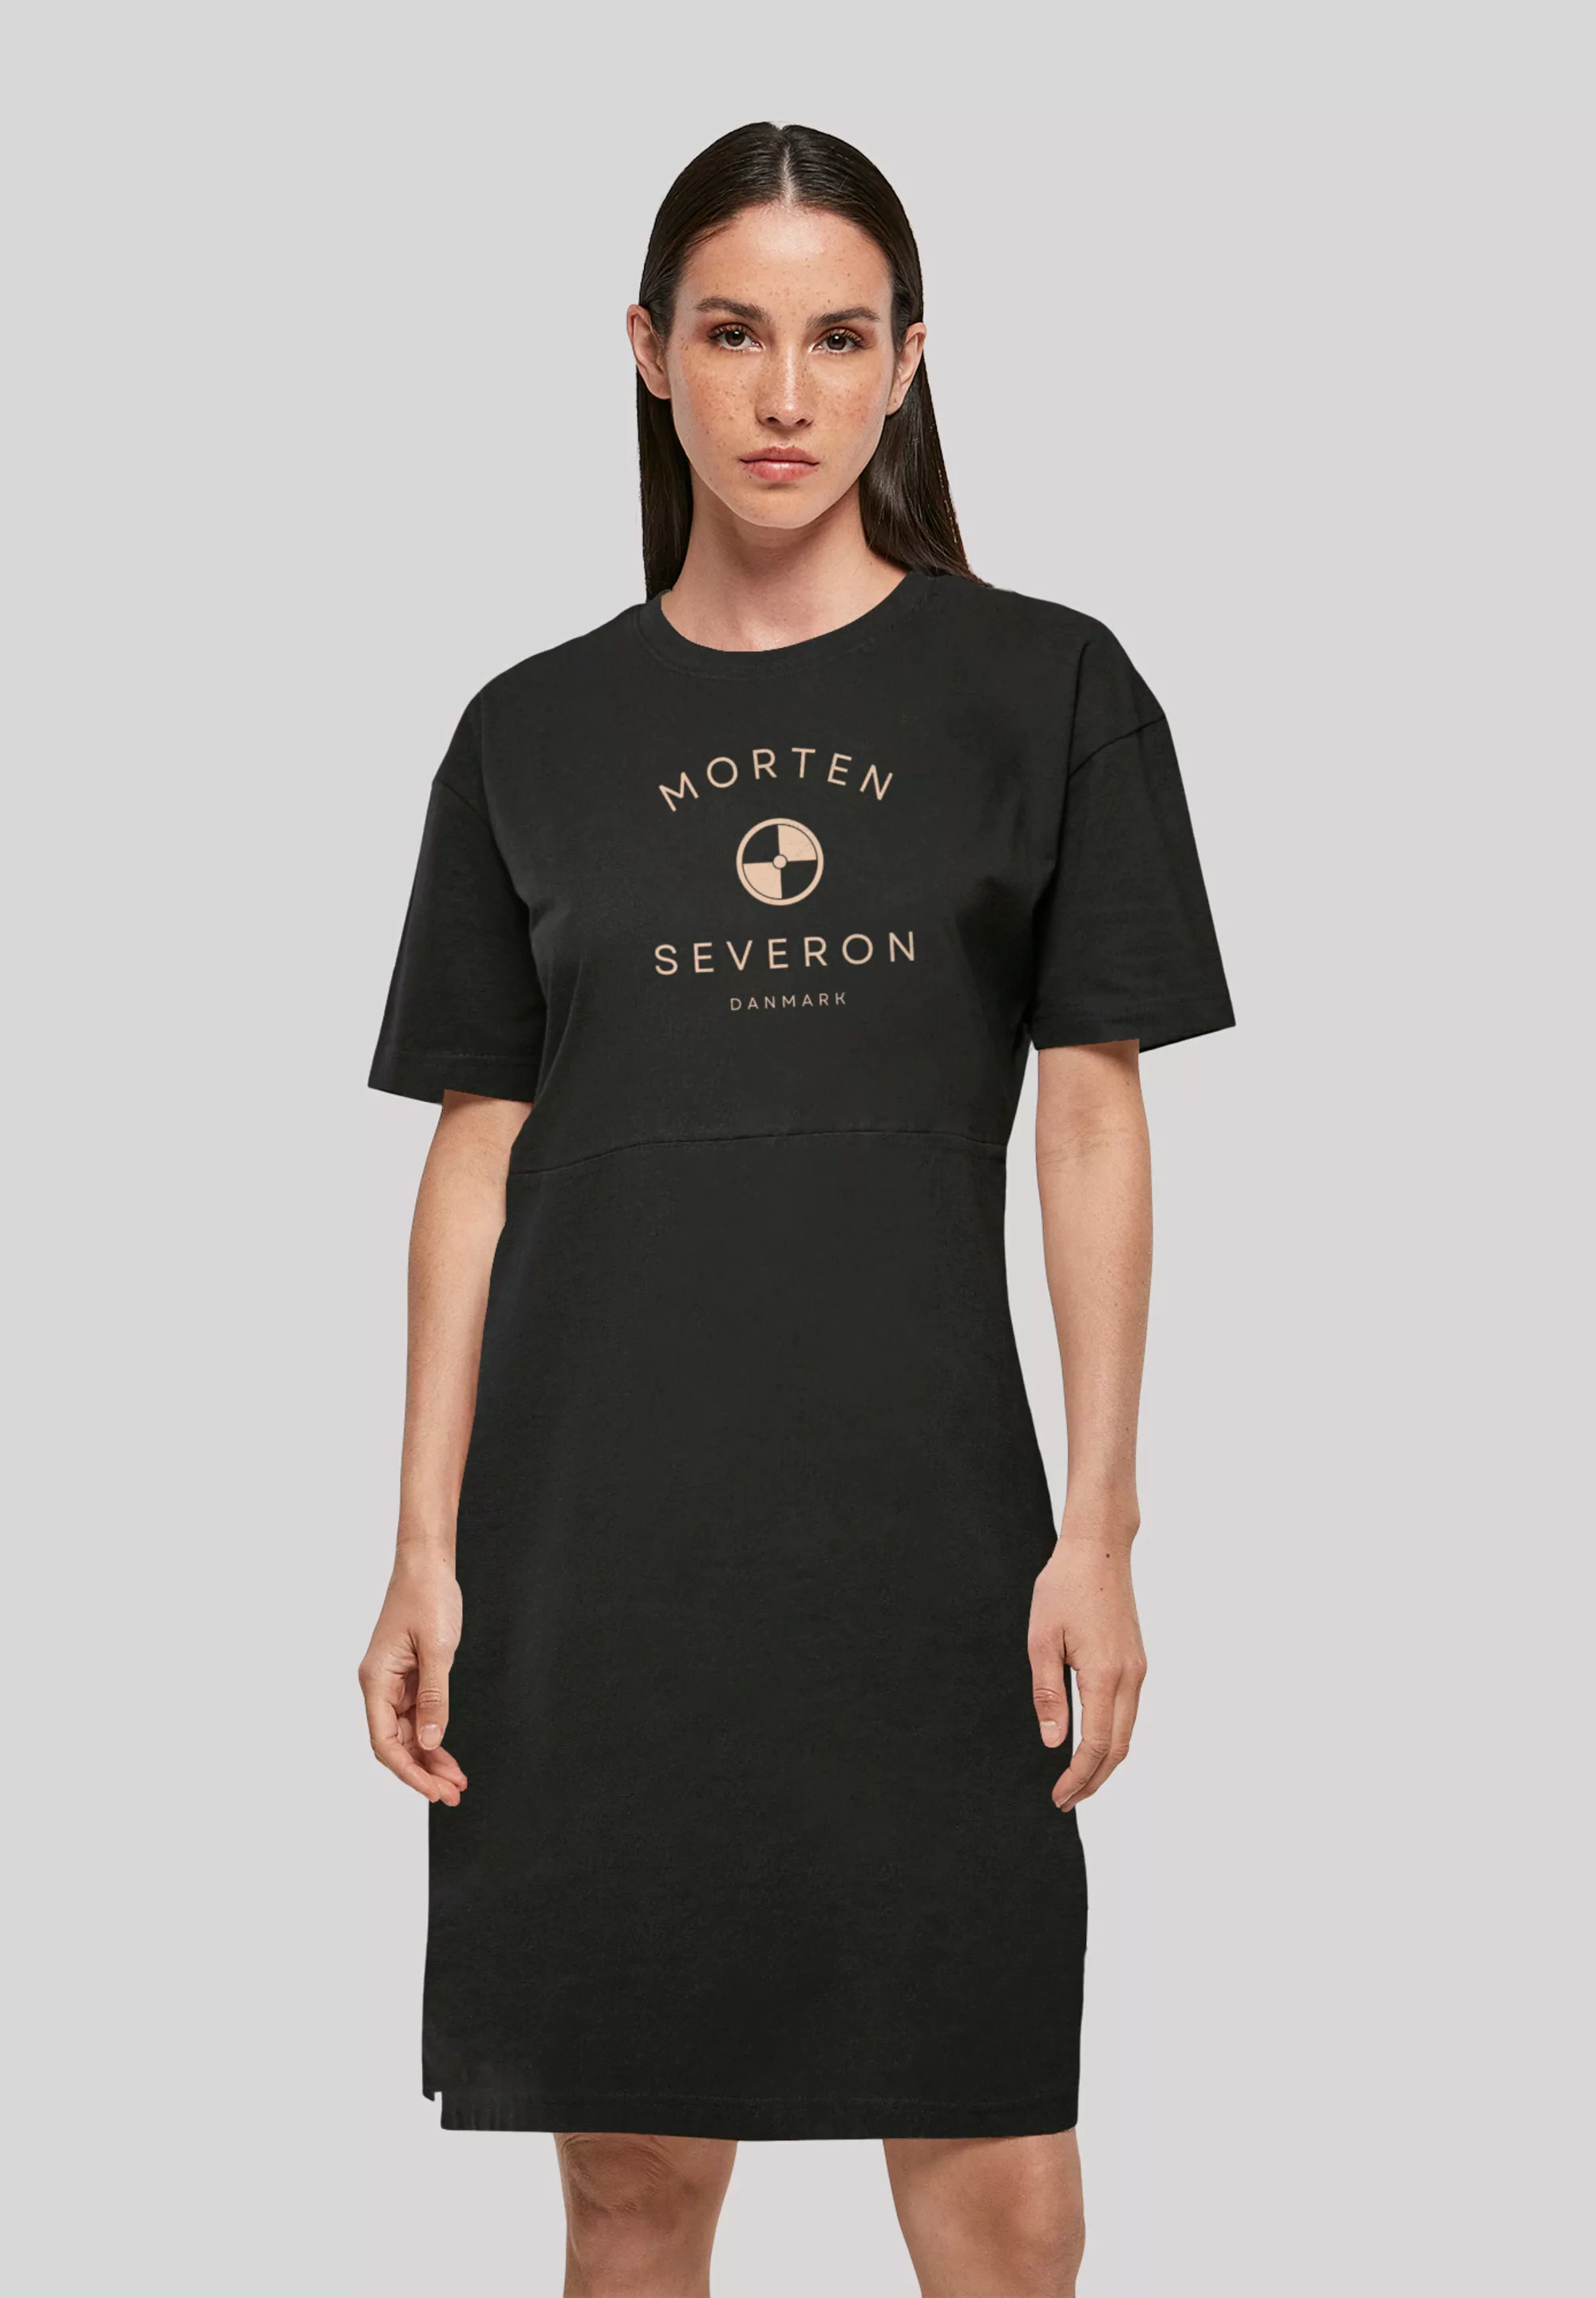 F4NT4STIC Shirtkleid "MORTEN SEVERON", Print günstig online kaufen